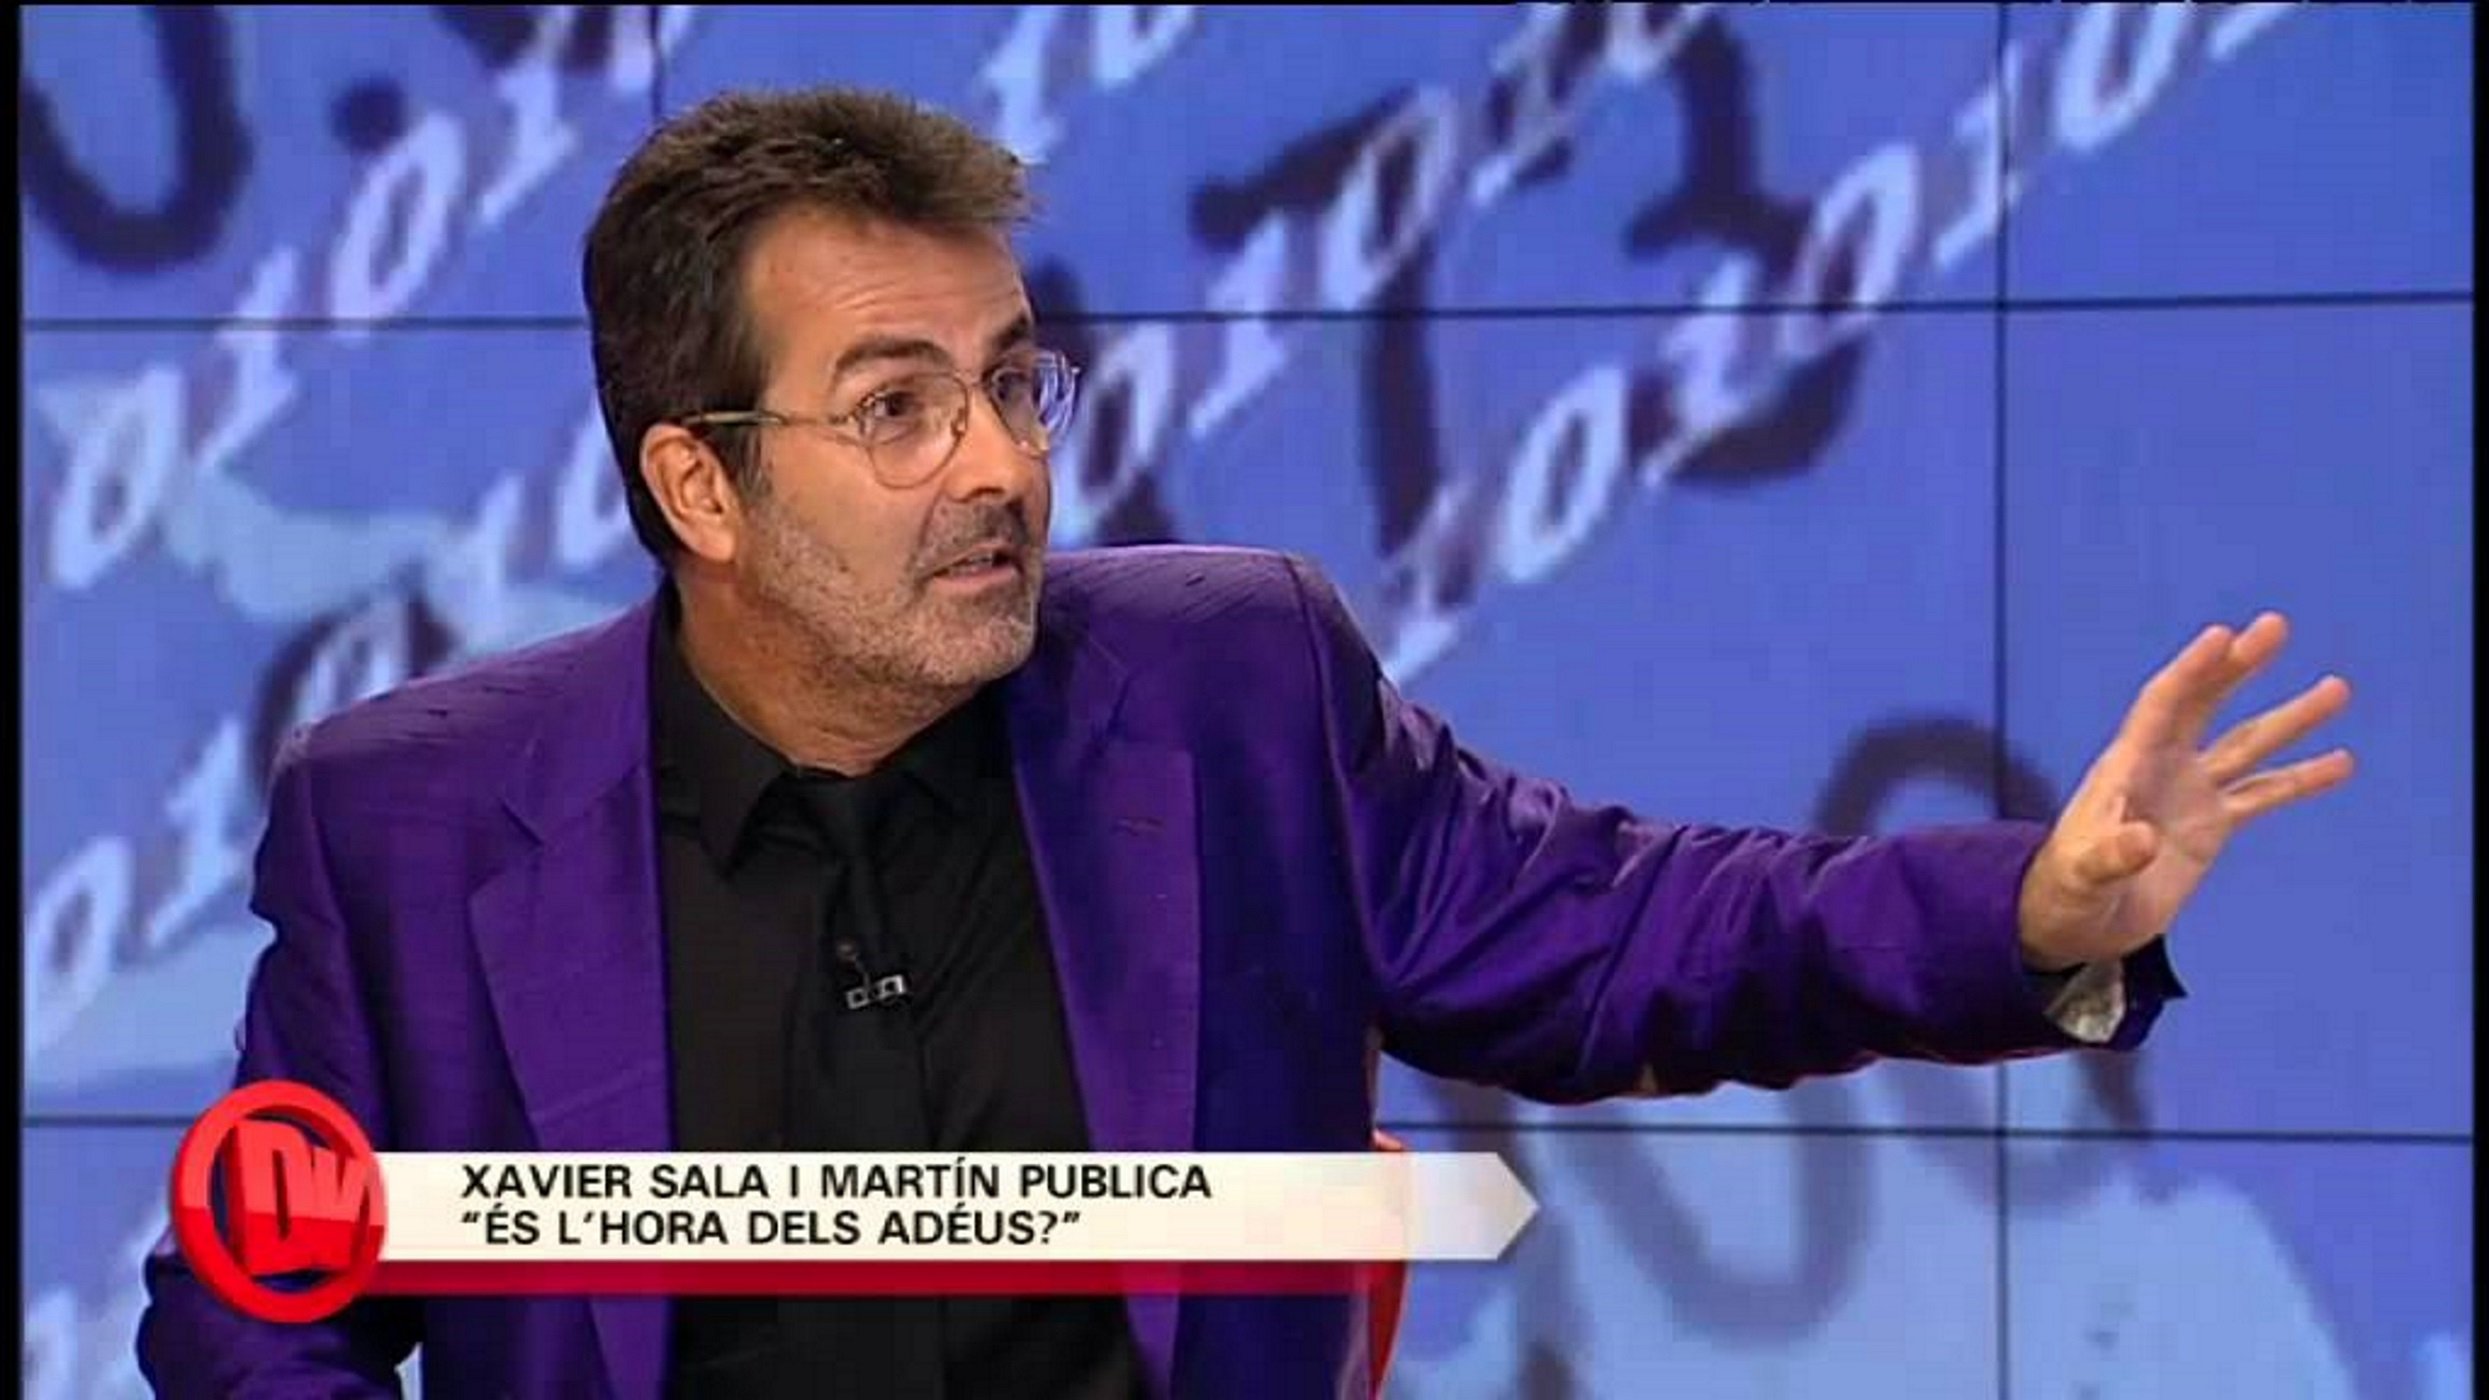 Sala-i-Martin surt en defensa de Nuria Roca davant l’allau de crítiques